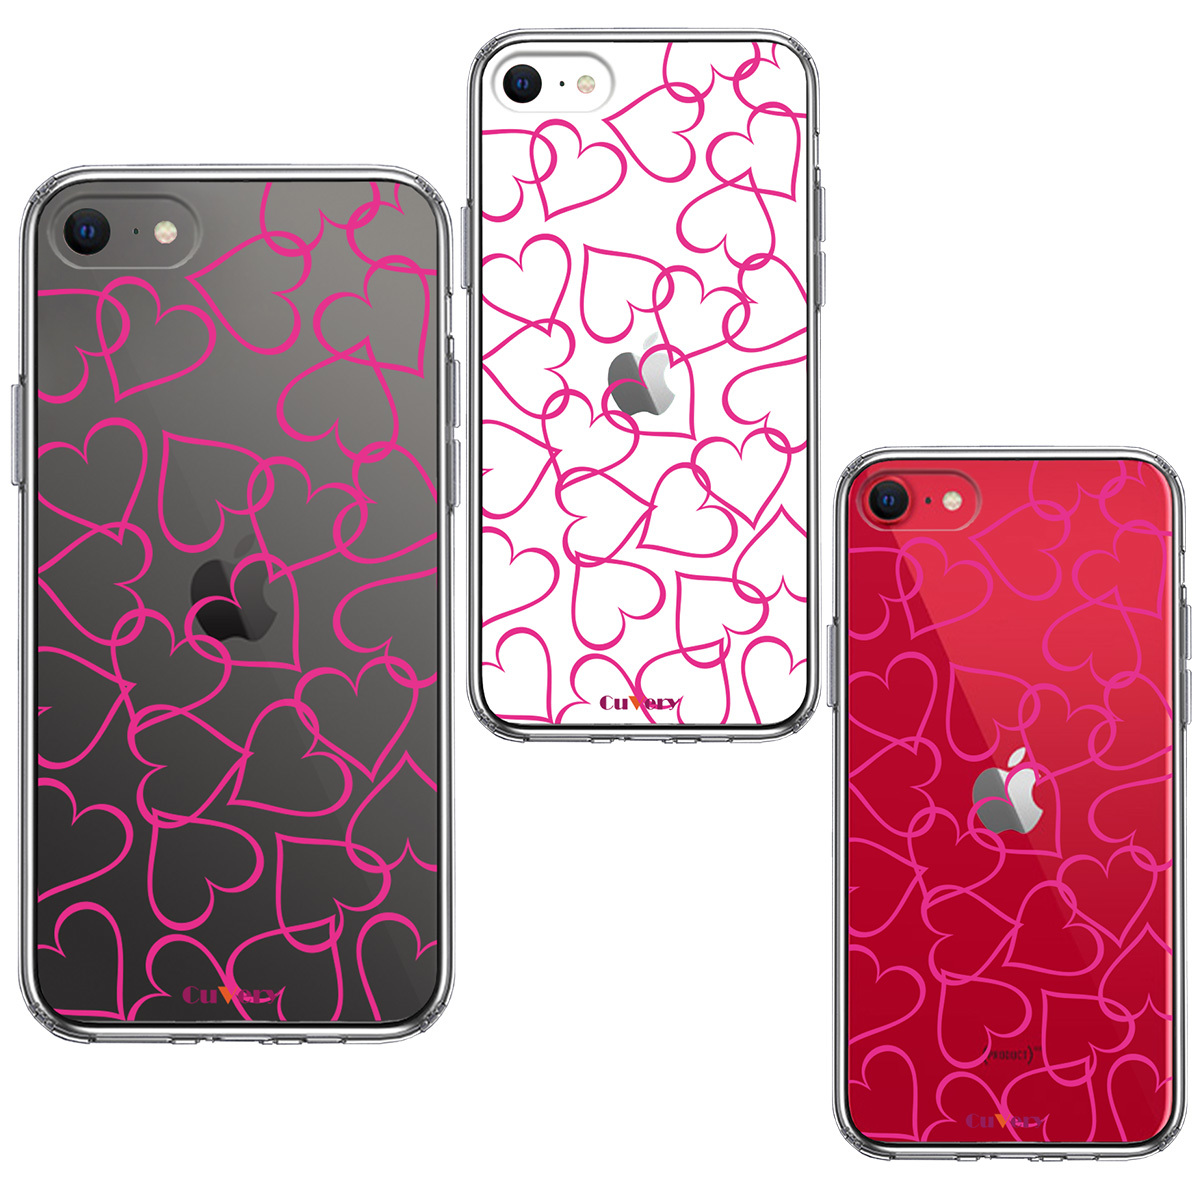 iPhoneSE 第2世代 可愛い おしゃれ 96％以上節約 クリア ケース CuVery ハート ピンク iPhoneケース クリアケース 人気 販売期間 限定のお得なタイムセール お洒落 送料無料 女子 女性向け かわいい